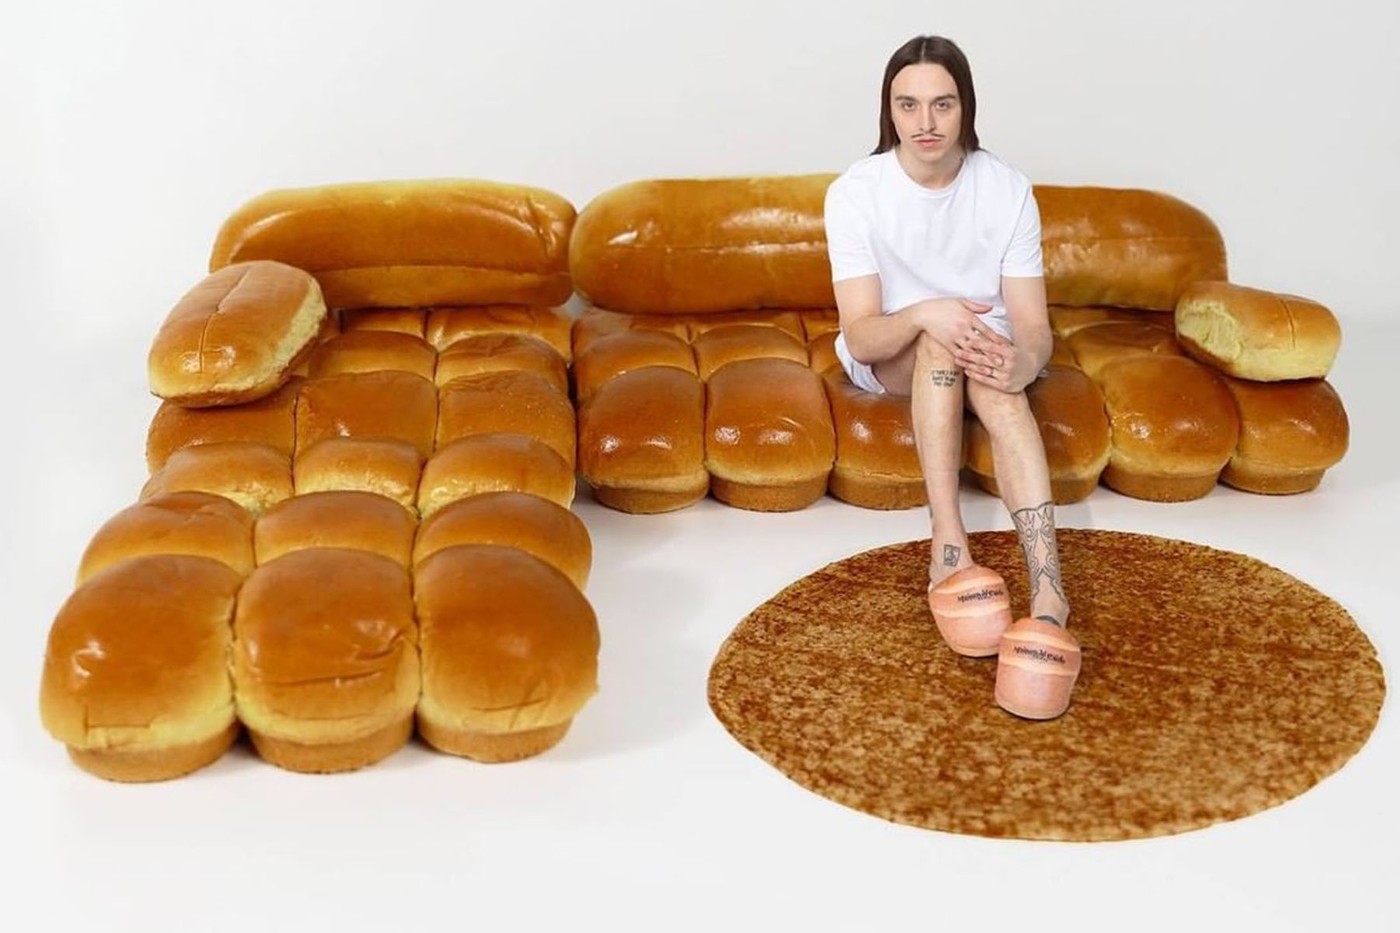 另类饶舌歌手 Tommy Cash 或将携手 Gab Bois、IKEA 推出最新联名面包沙发